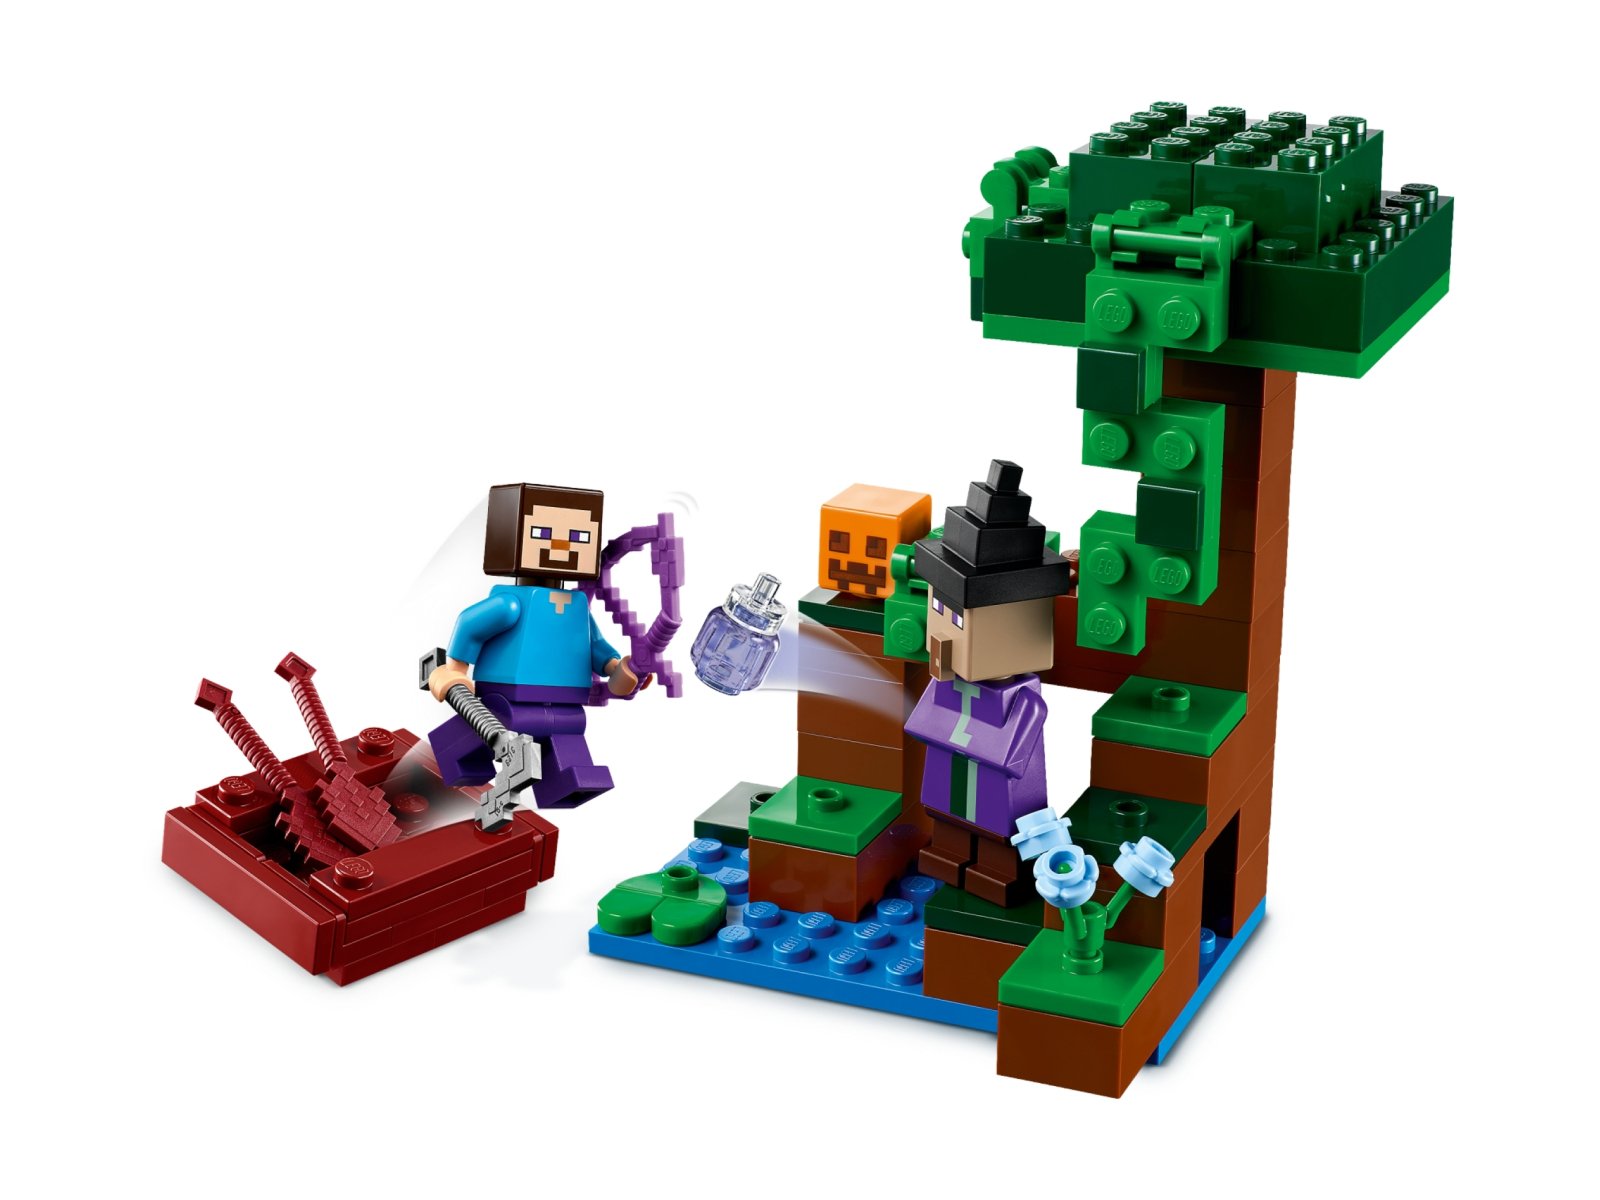 LEGO 21248 Minecraft Dyniowa farma